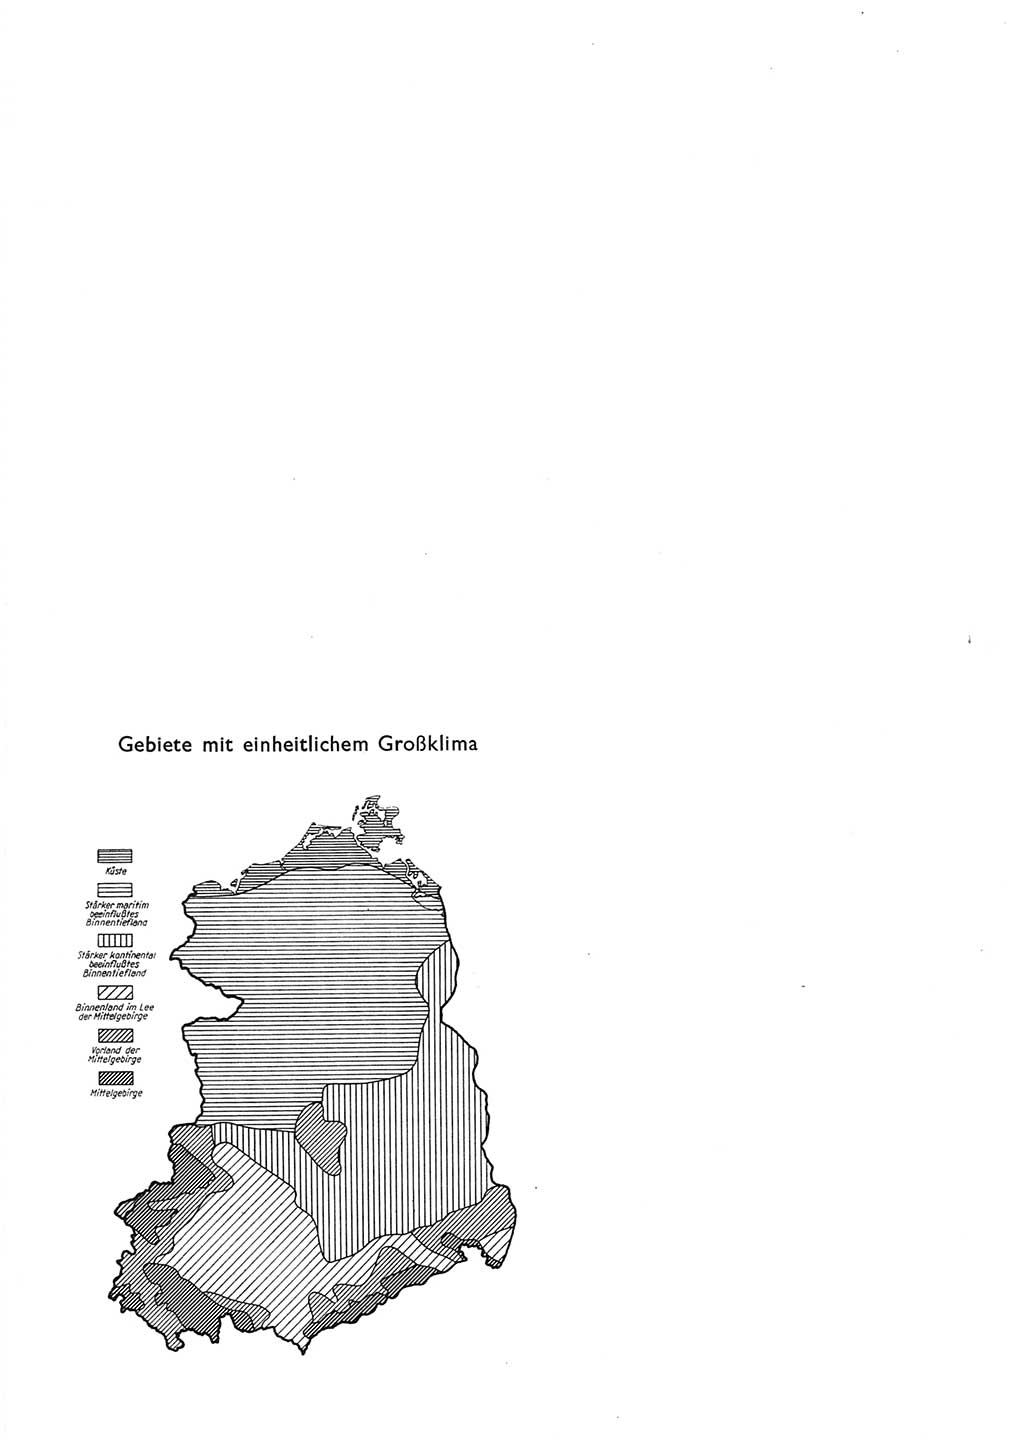 Statistisches Jahrbuch der Deutschen Demokratischen Republik (DDR) 1965, Seite 582 (Stat. Jb. DDR 1965, S. 582)